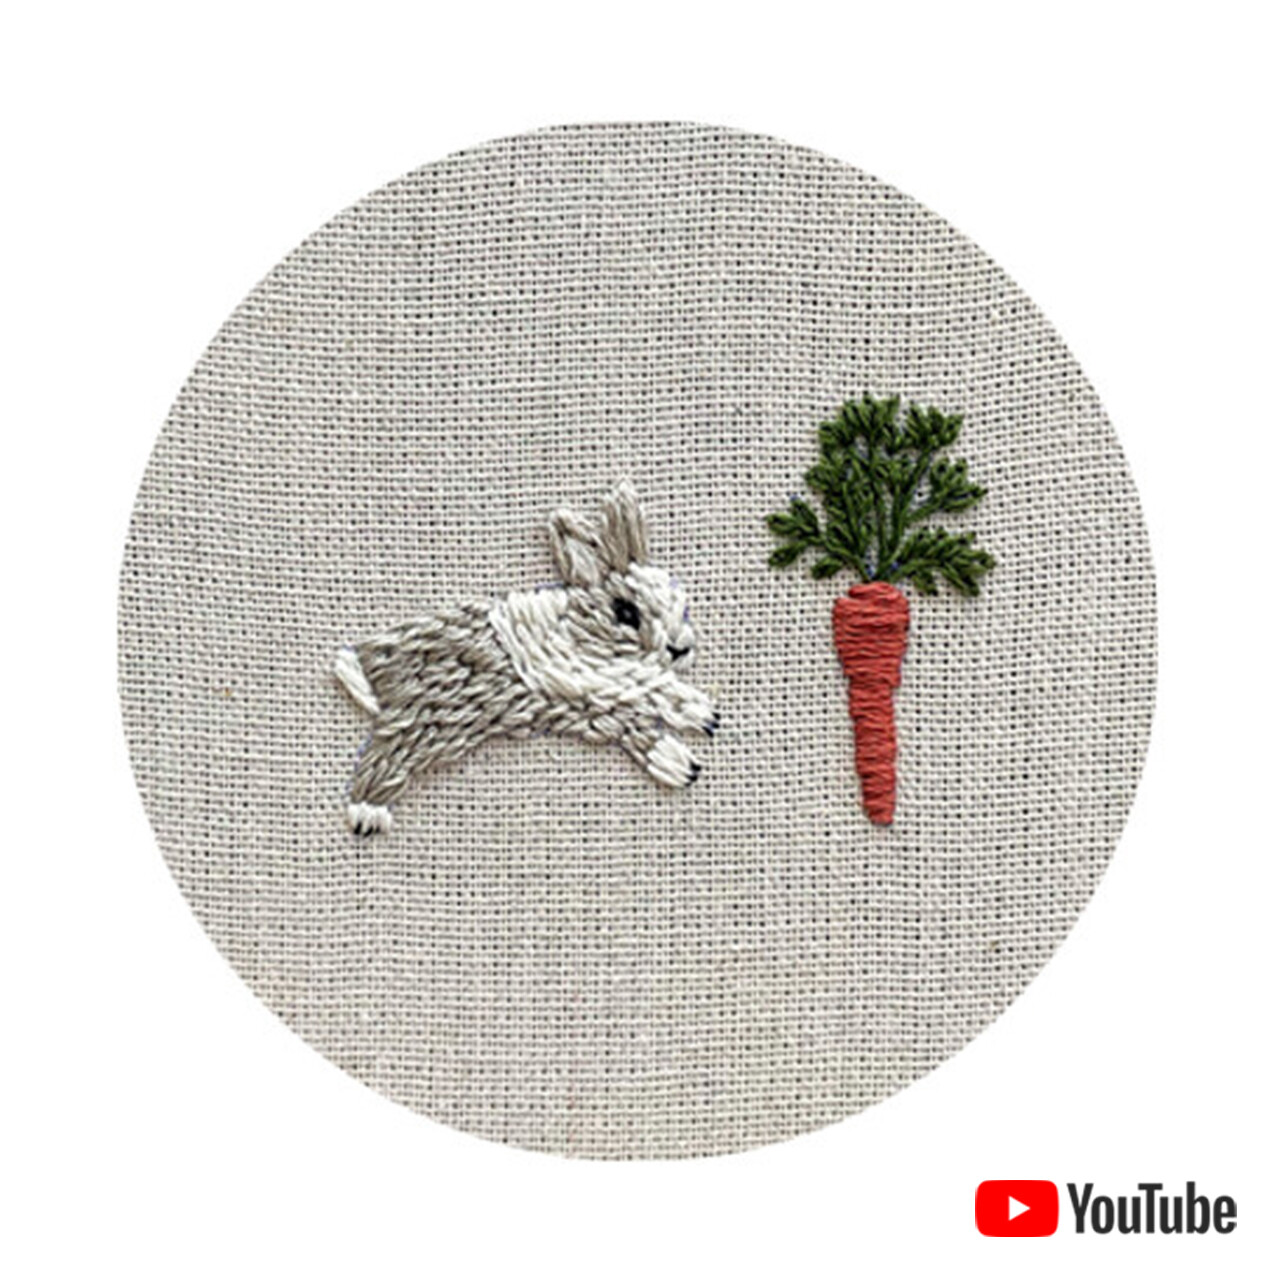 Бесплатная схема для вышивки "Кролик и морковка" 15 см + видео урок